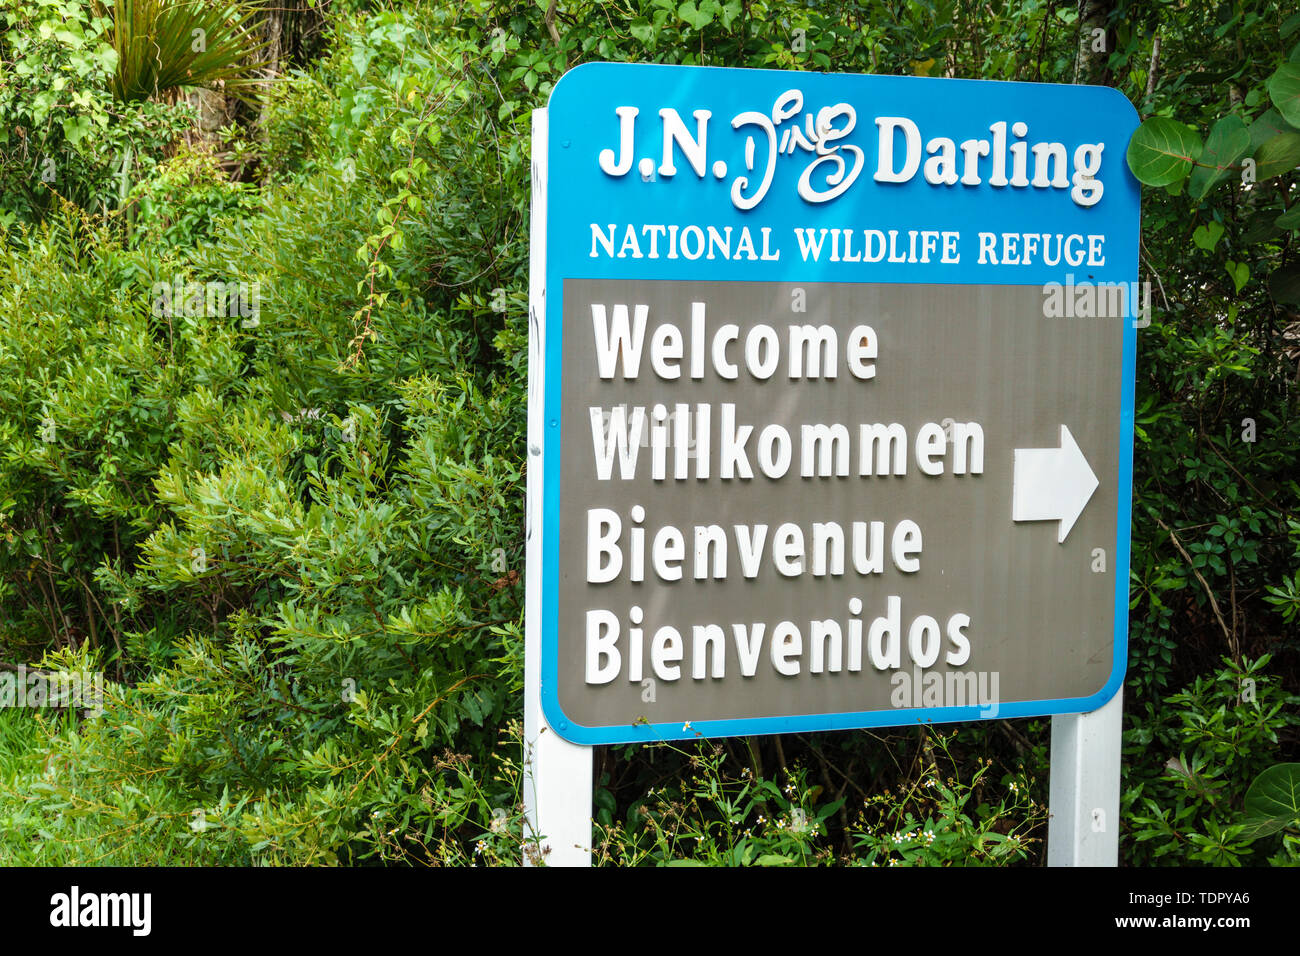 Sanibel Island Florida, J.N. Ding Darling National Wildlife refuge, al conservation, panneau d'entrée de bienvenue, plusieurs langues, anglais français allemand Banque D'Images